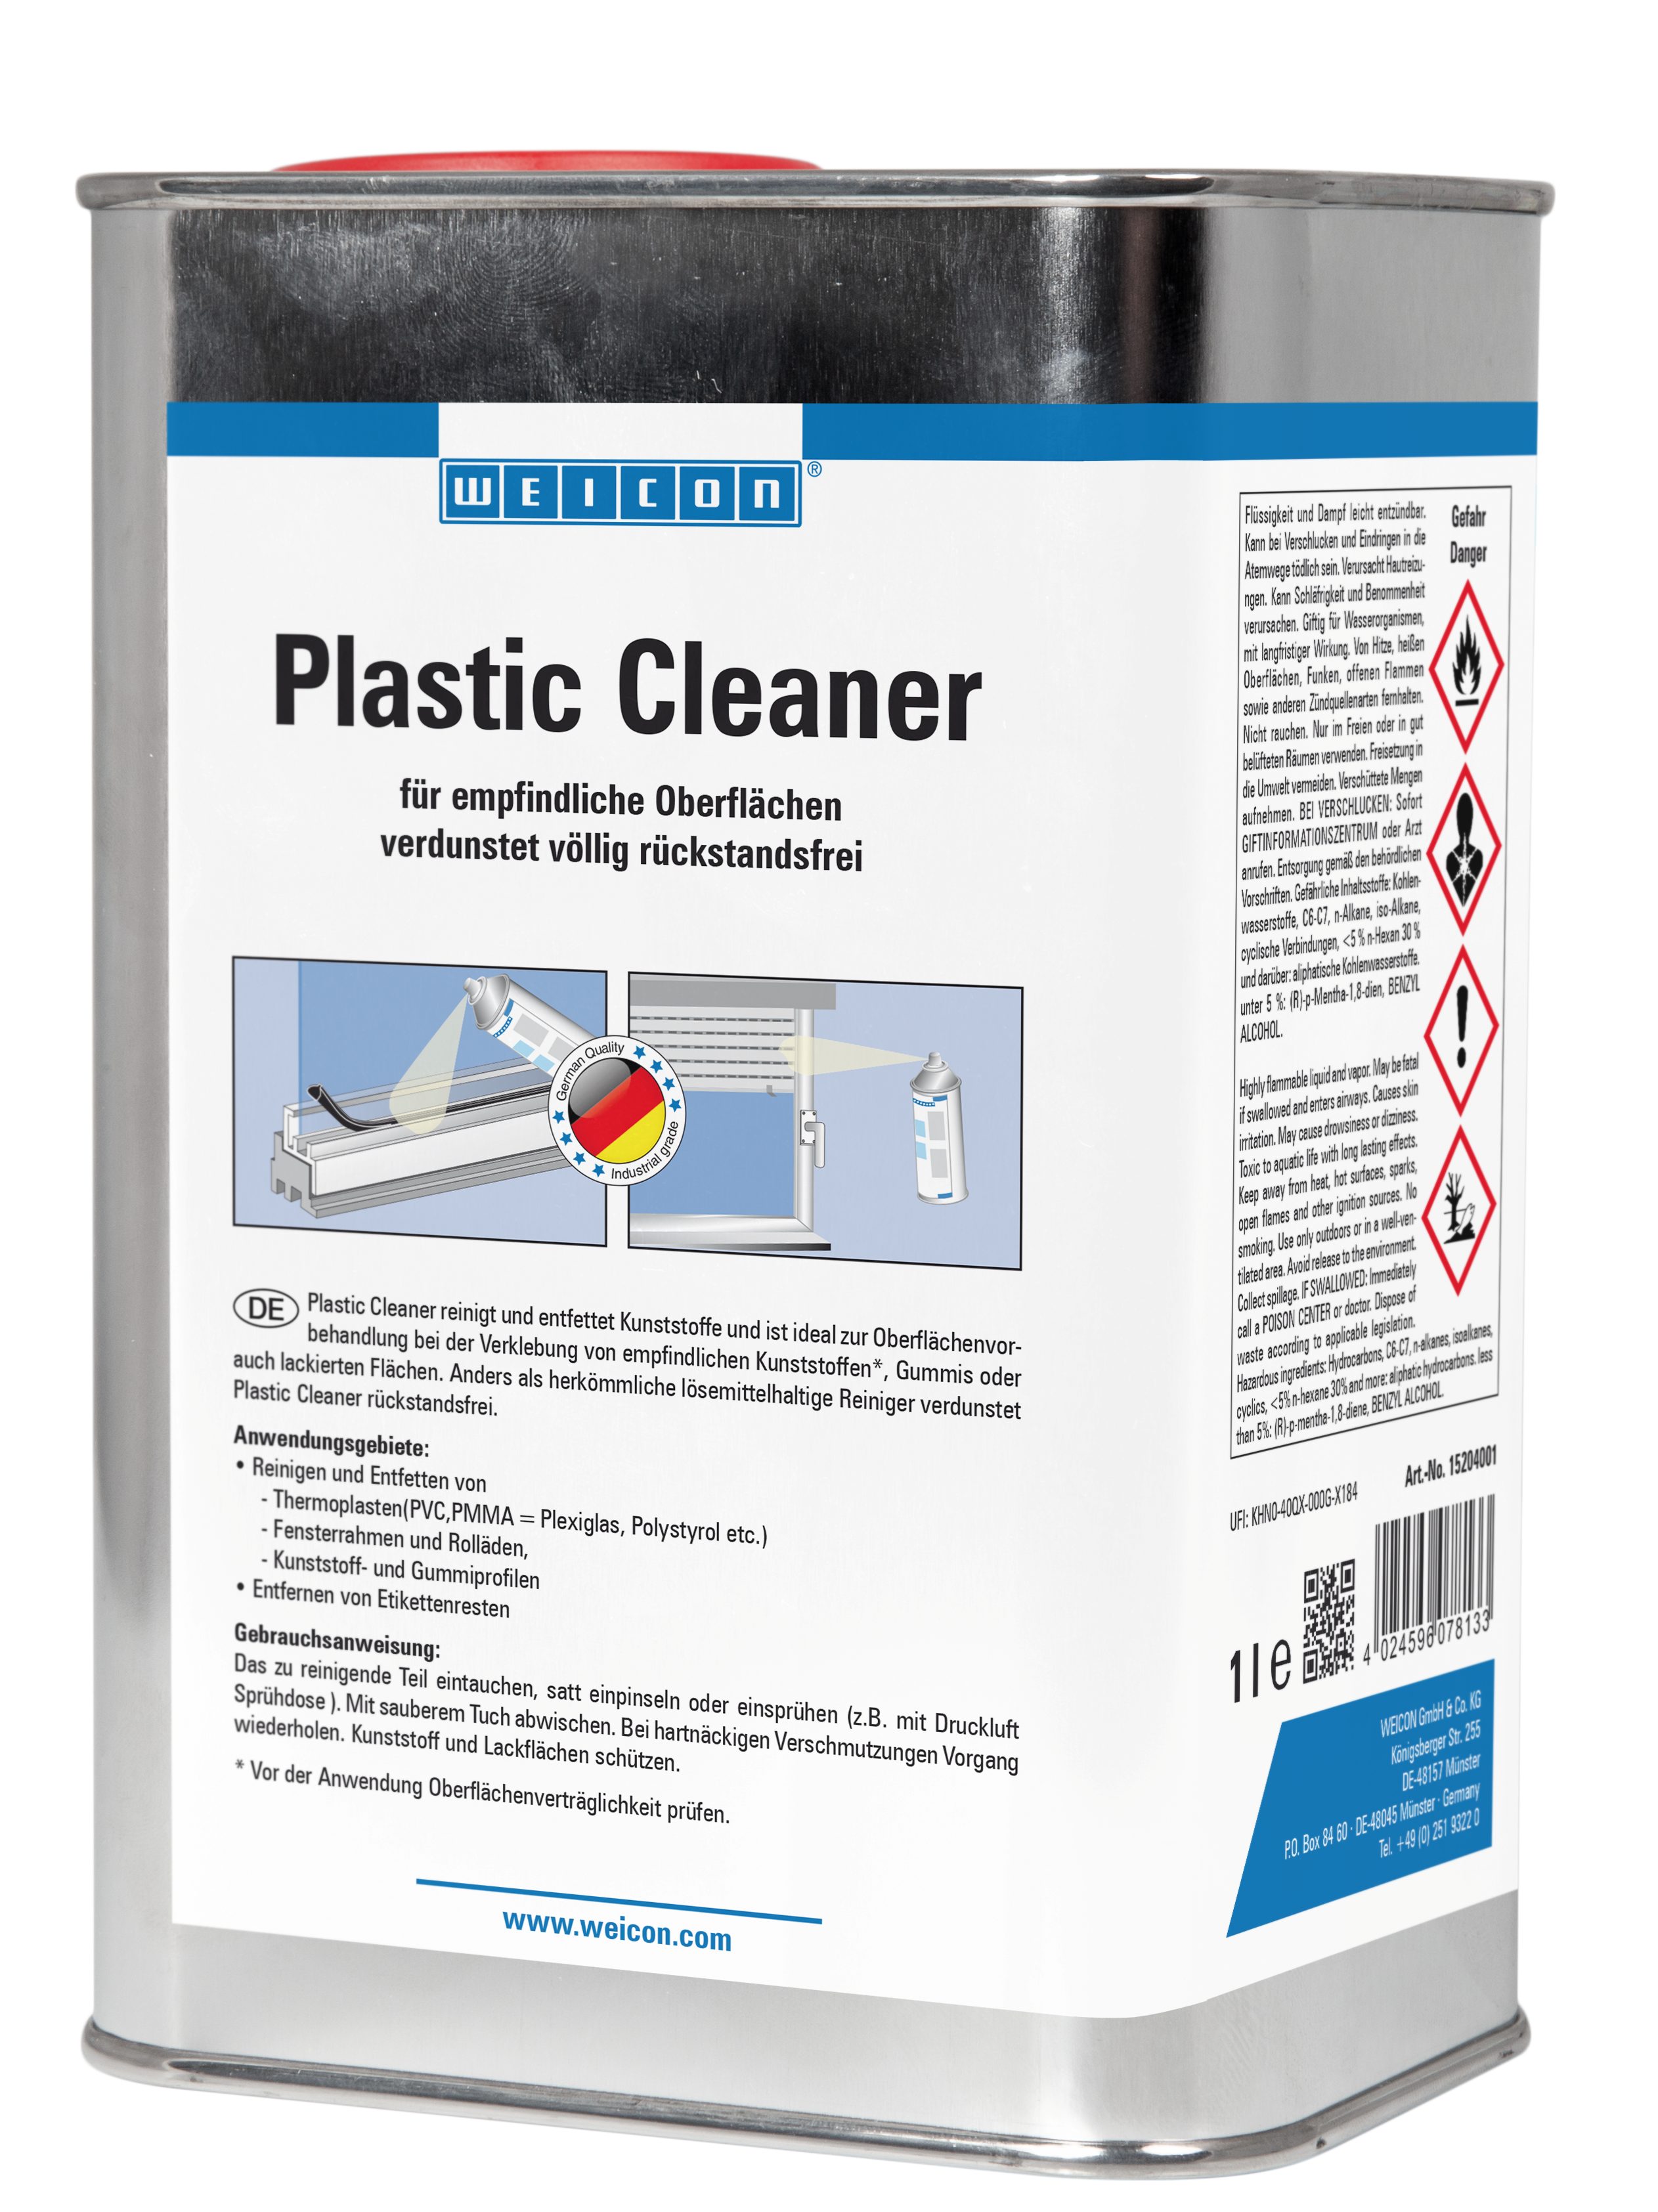 WEICON Plastic Cleaner, Reiniger für Kunststoff und Gummi Kunststoffreiniger (für empfindliche Merkmale)